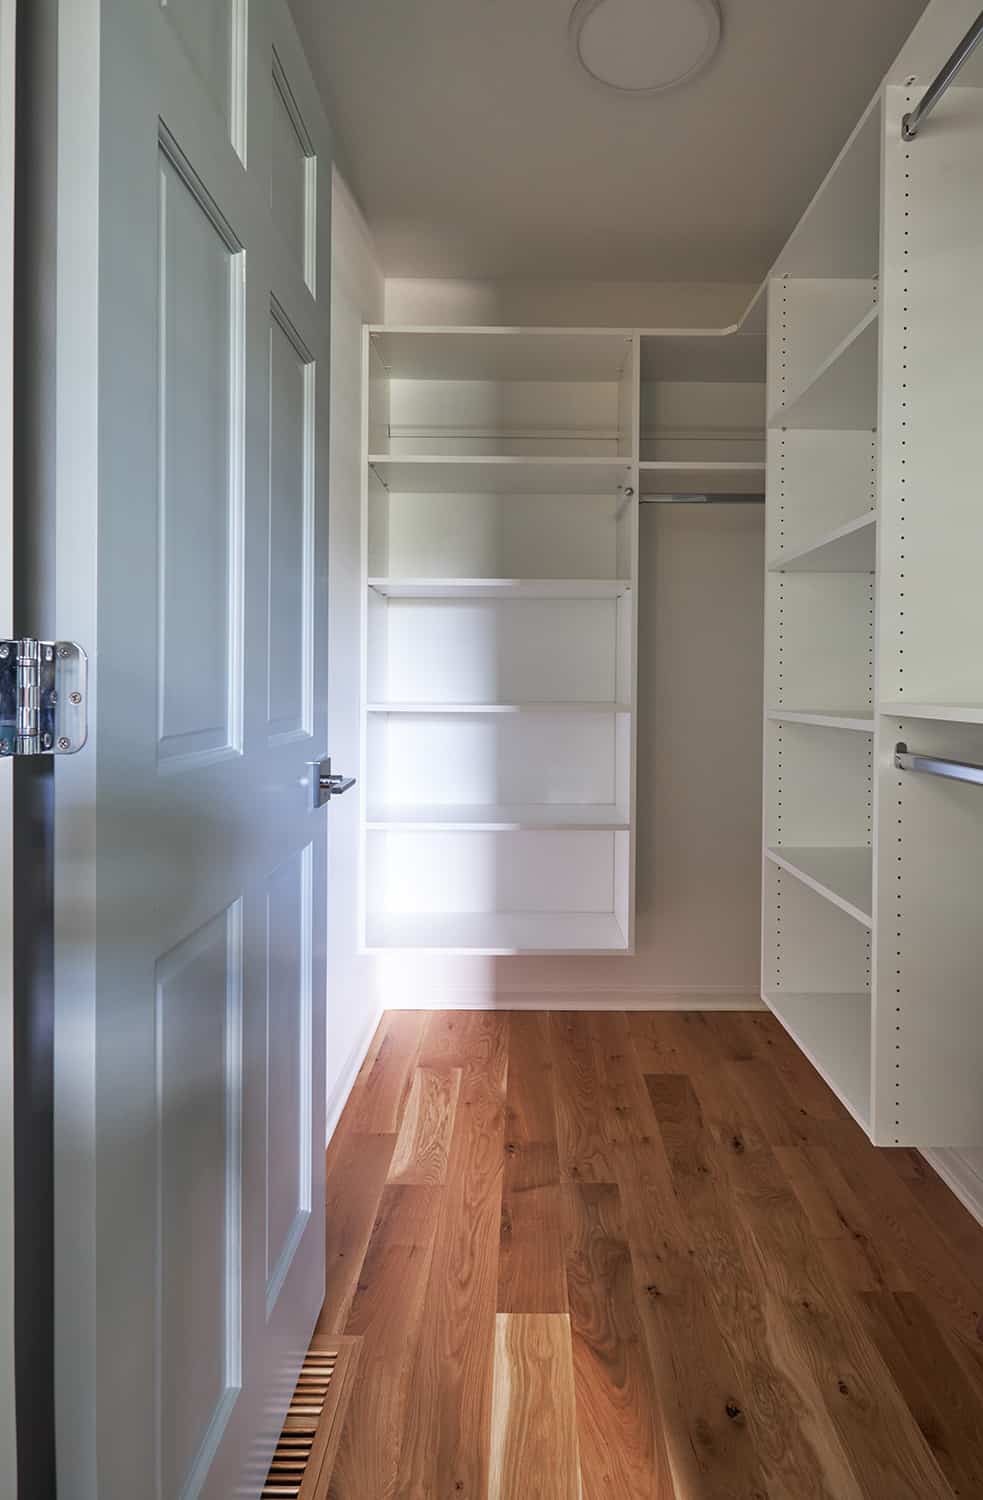 open shelving in linen closet